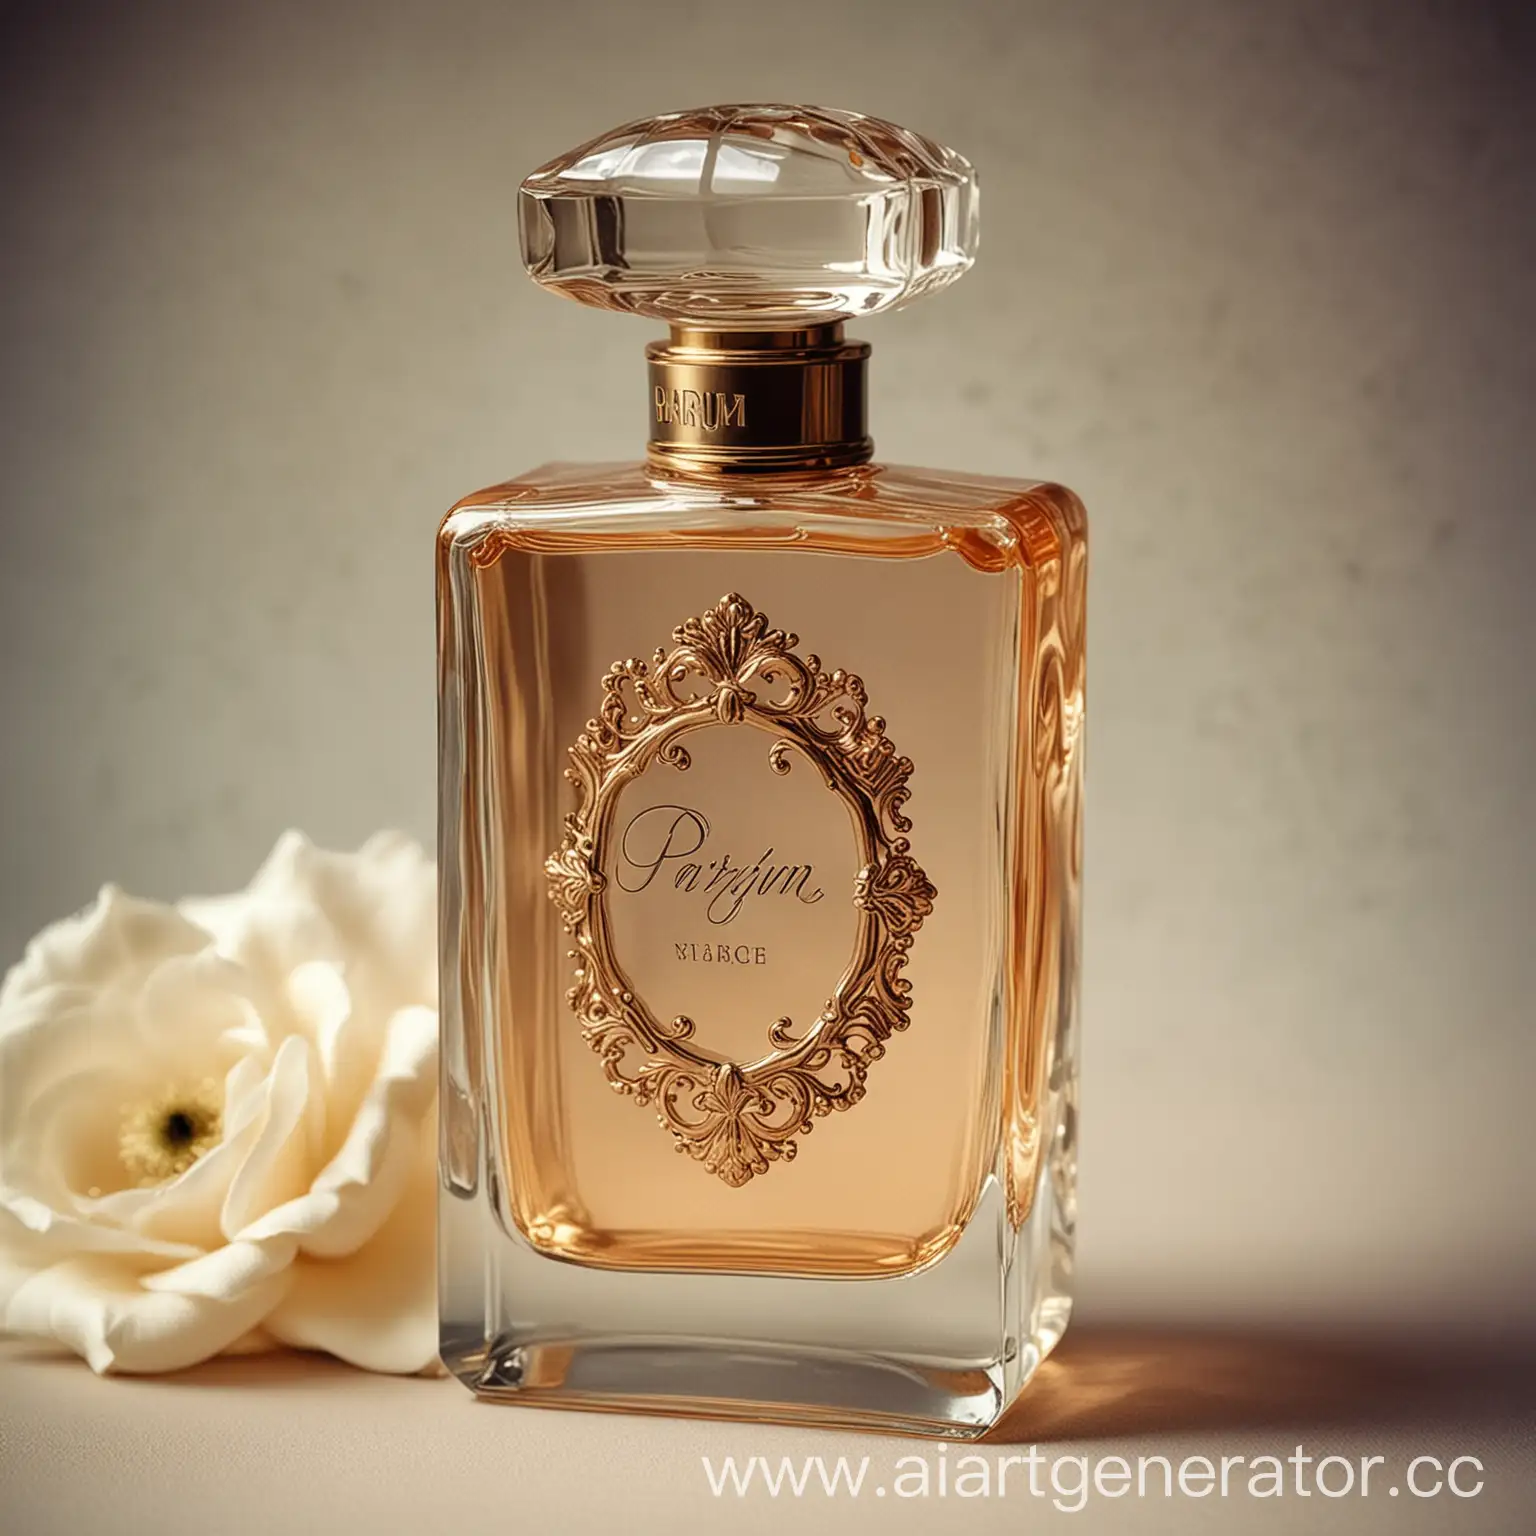 Exquisite-Vintage-Perfume-Bottle-with-Parfum-Vintage-Inscription